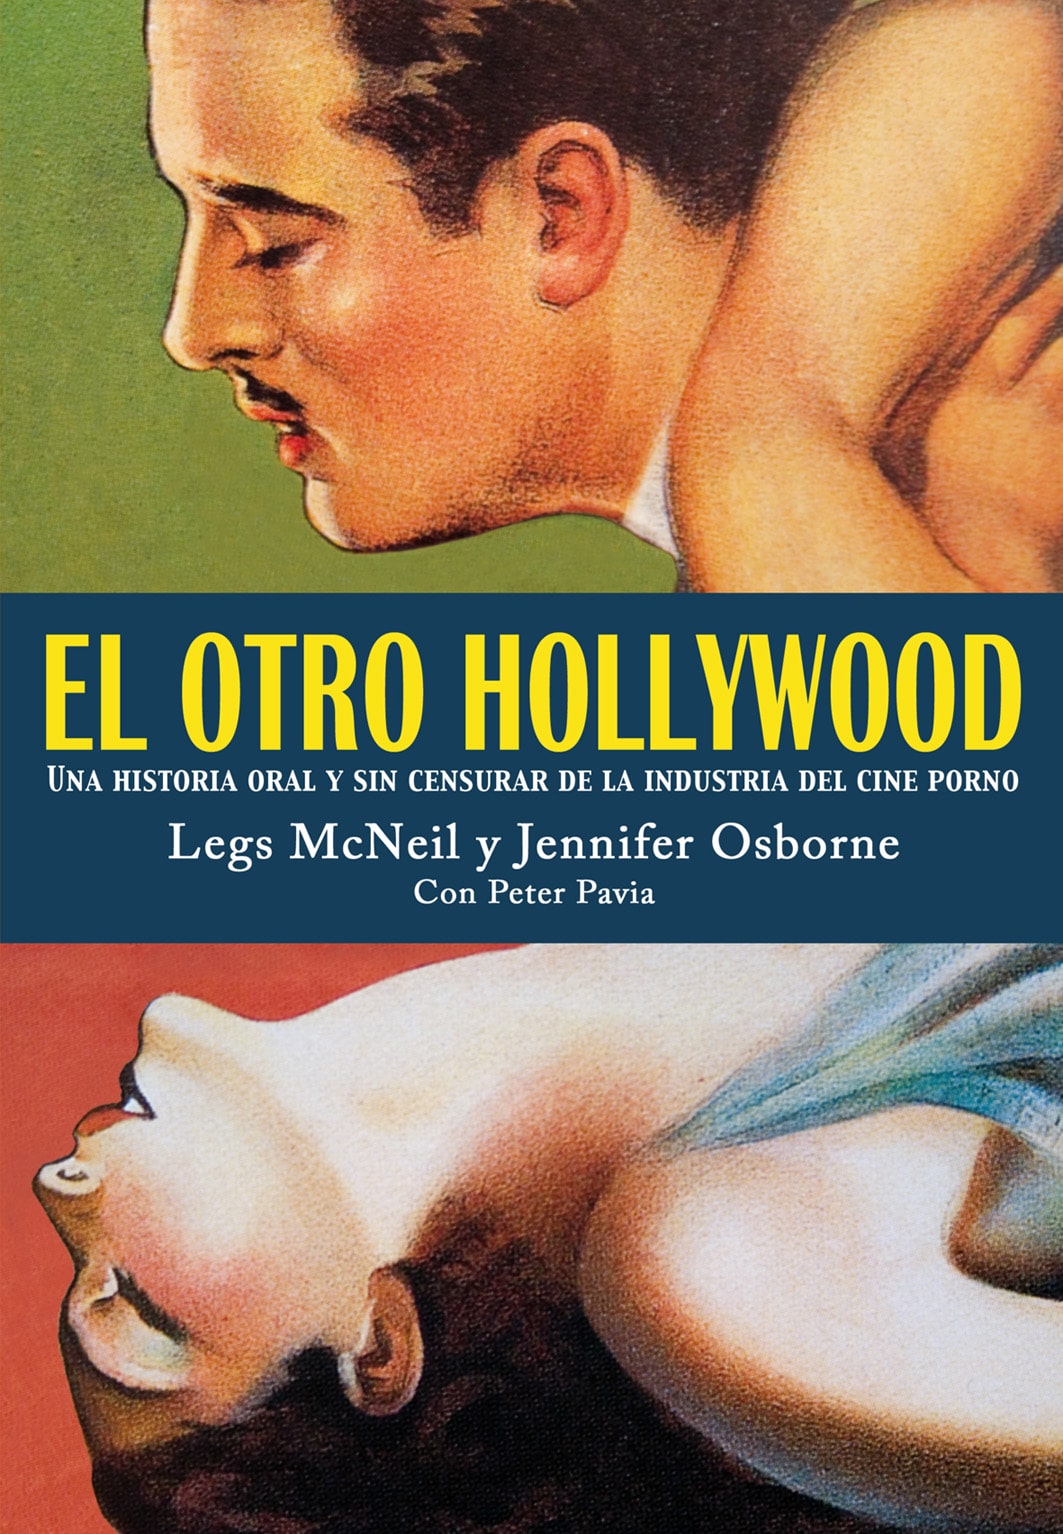  Libro - El otro hollywood - edición especial - libro curioso